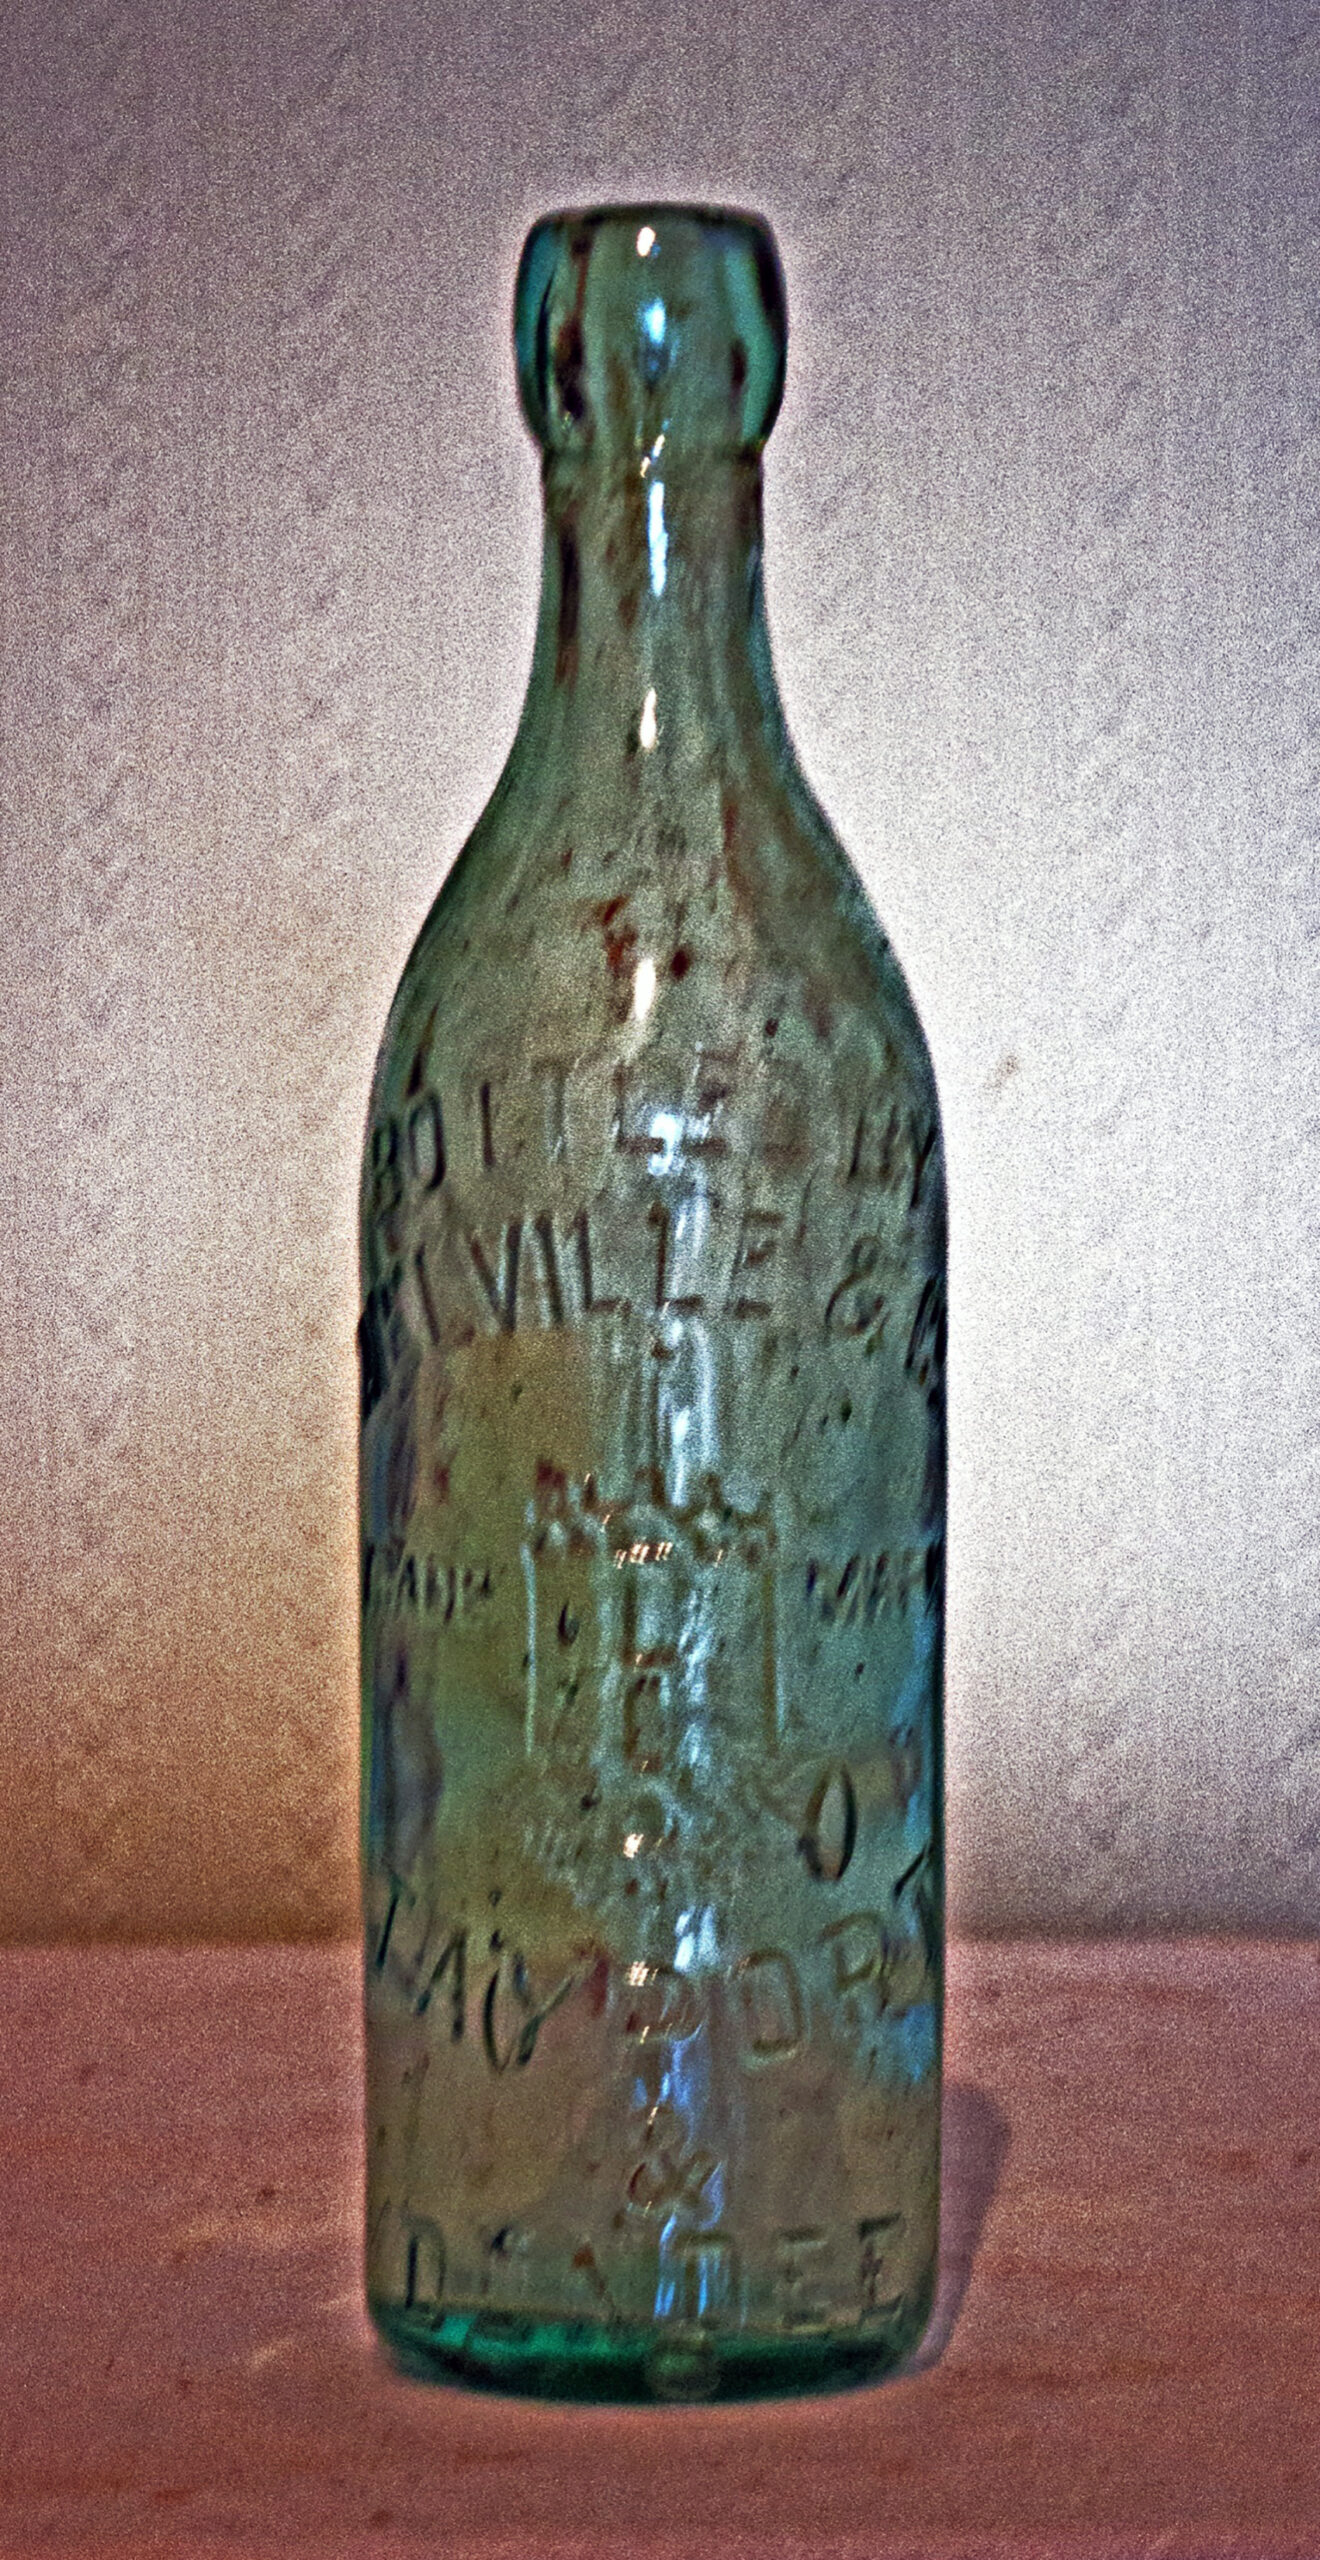 Tayport Heritage Trail - Board 4 - Clear Lemonade bottle